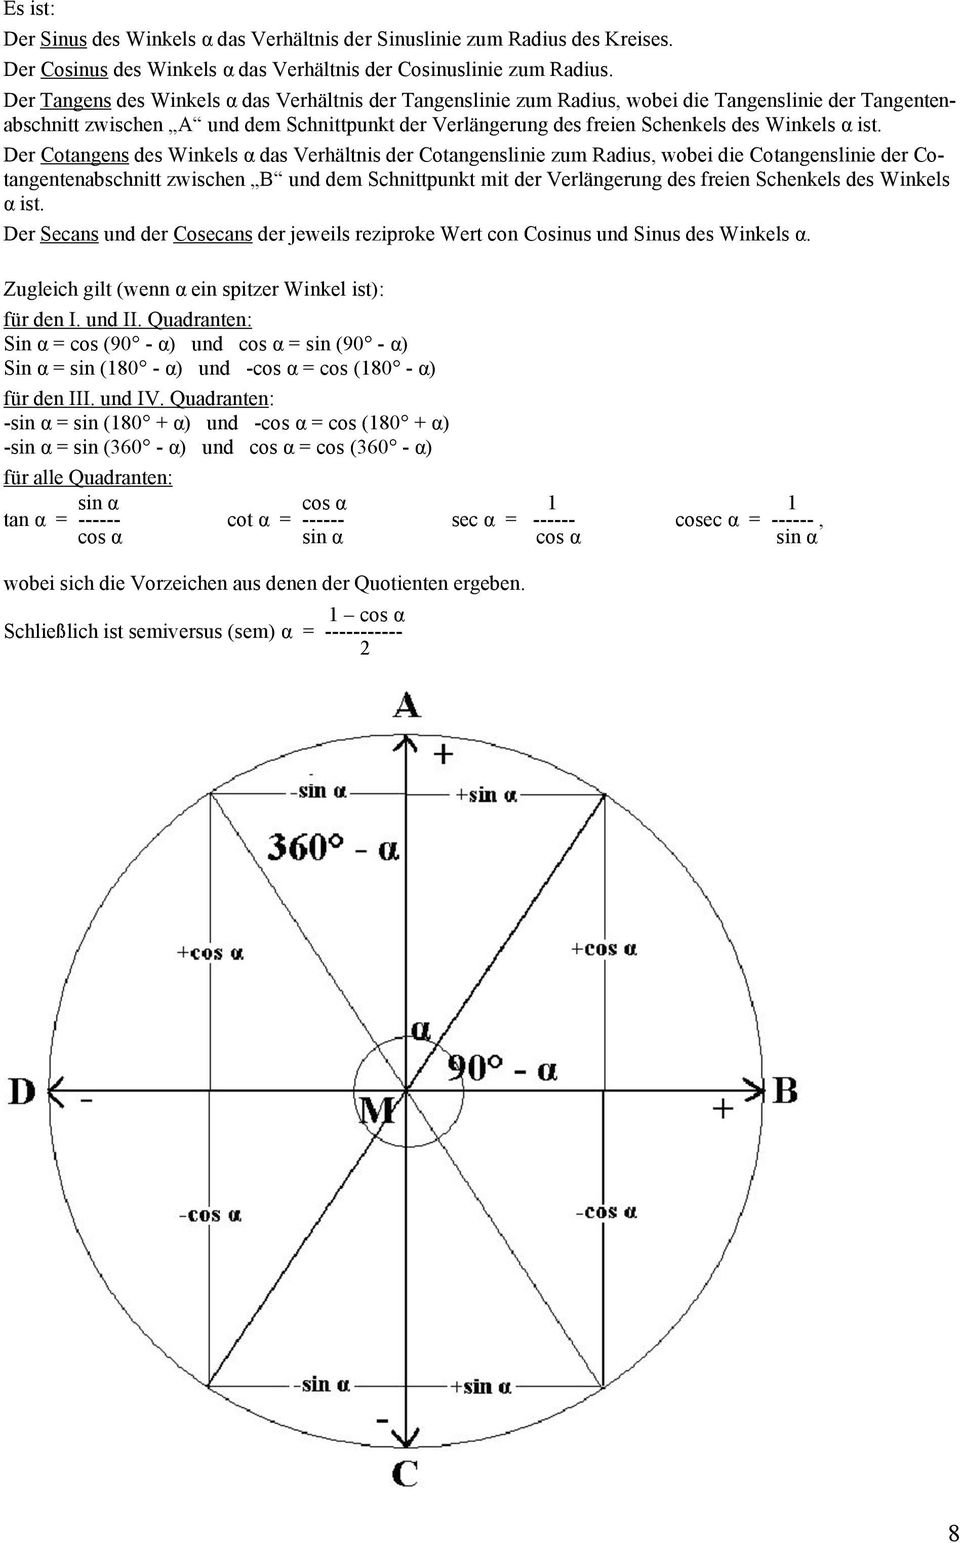 ist. Der Cotangens des Winkels α das Verhältnis der Cotangenslinie zum Radius, wobei die Cotangenslinie der Cotangentenabschnitt zwischen B und dem Schnittpunkt mit der Verlängerung des freien